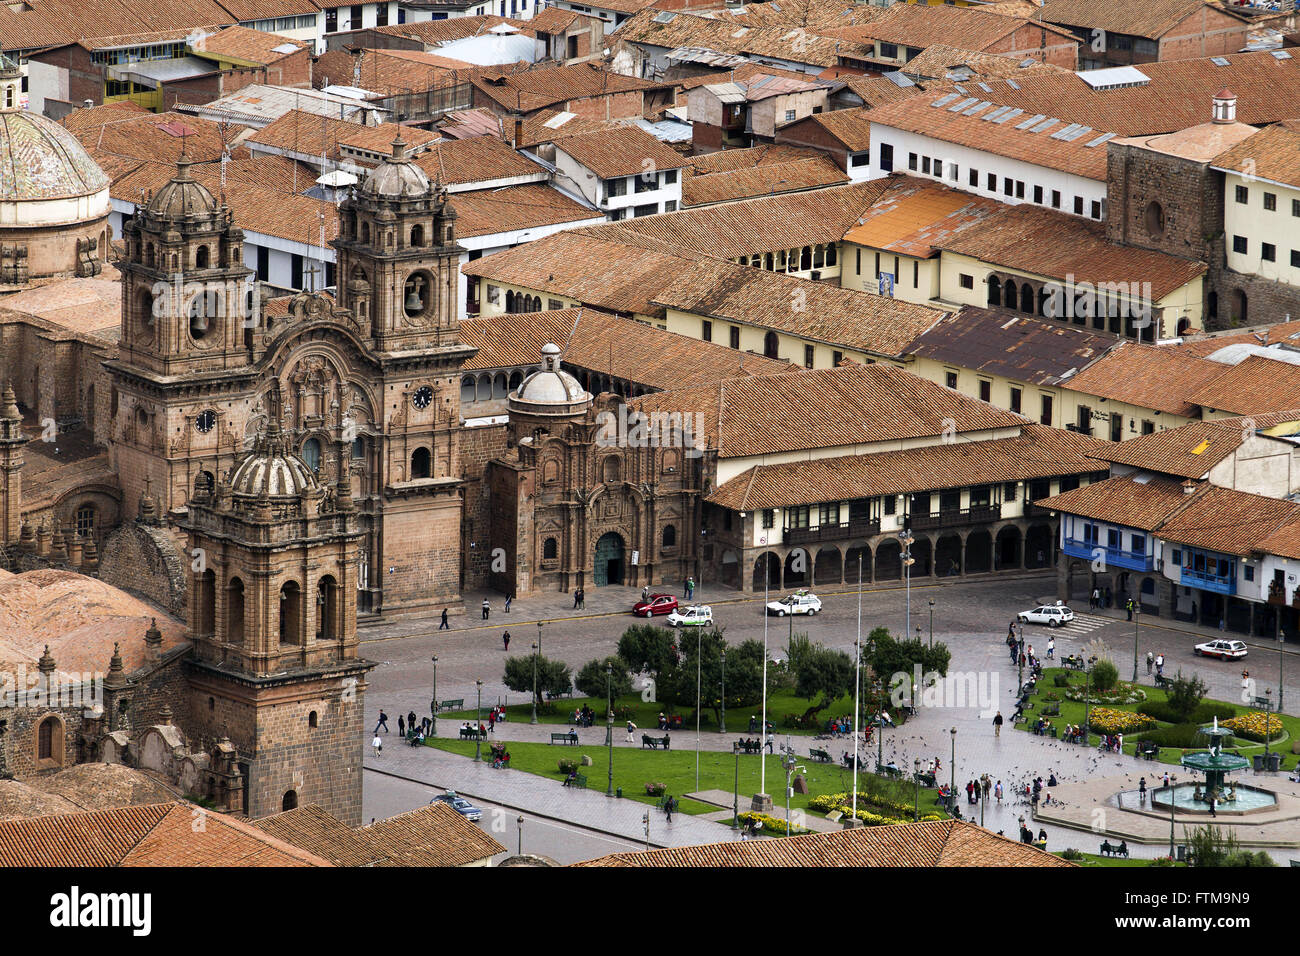 Iglesia de la Compania in the Plaza de Armas - historic center of Cusco - Peru Stock Photo